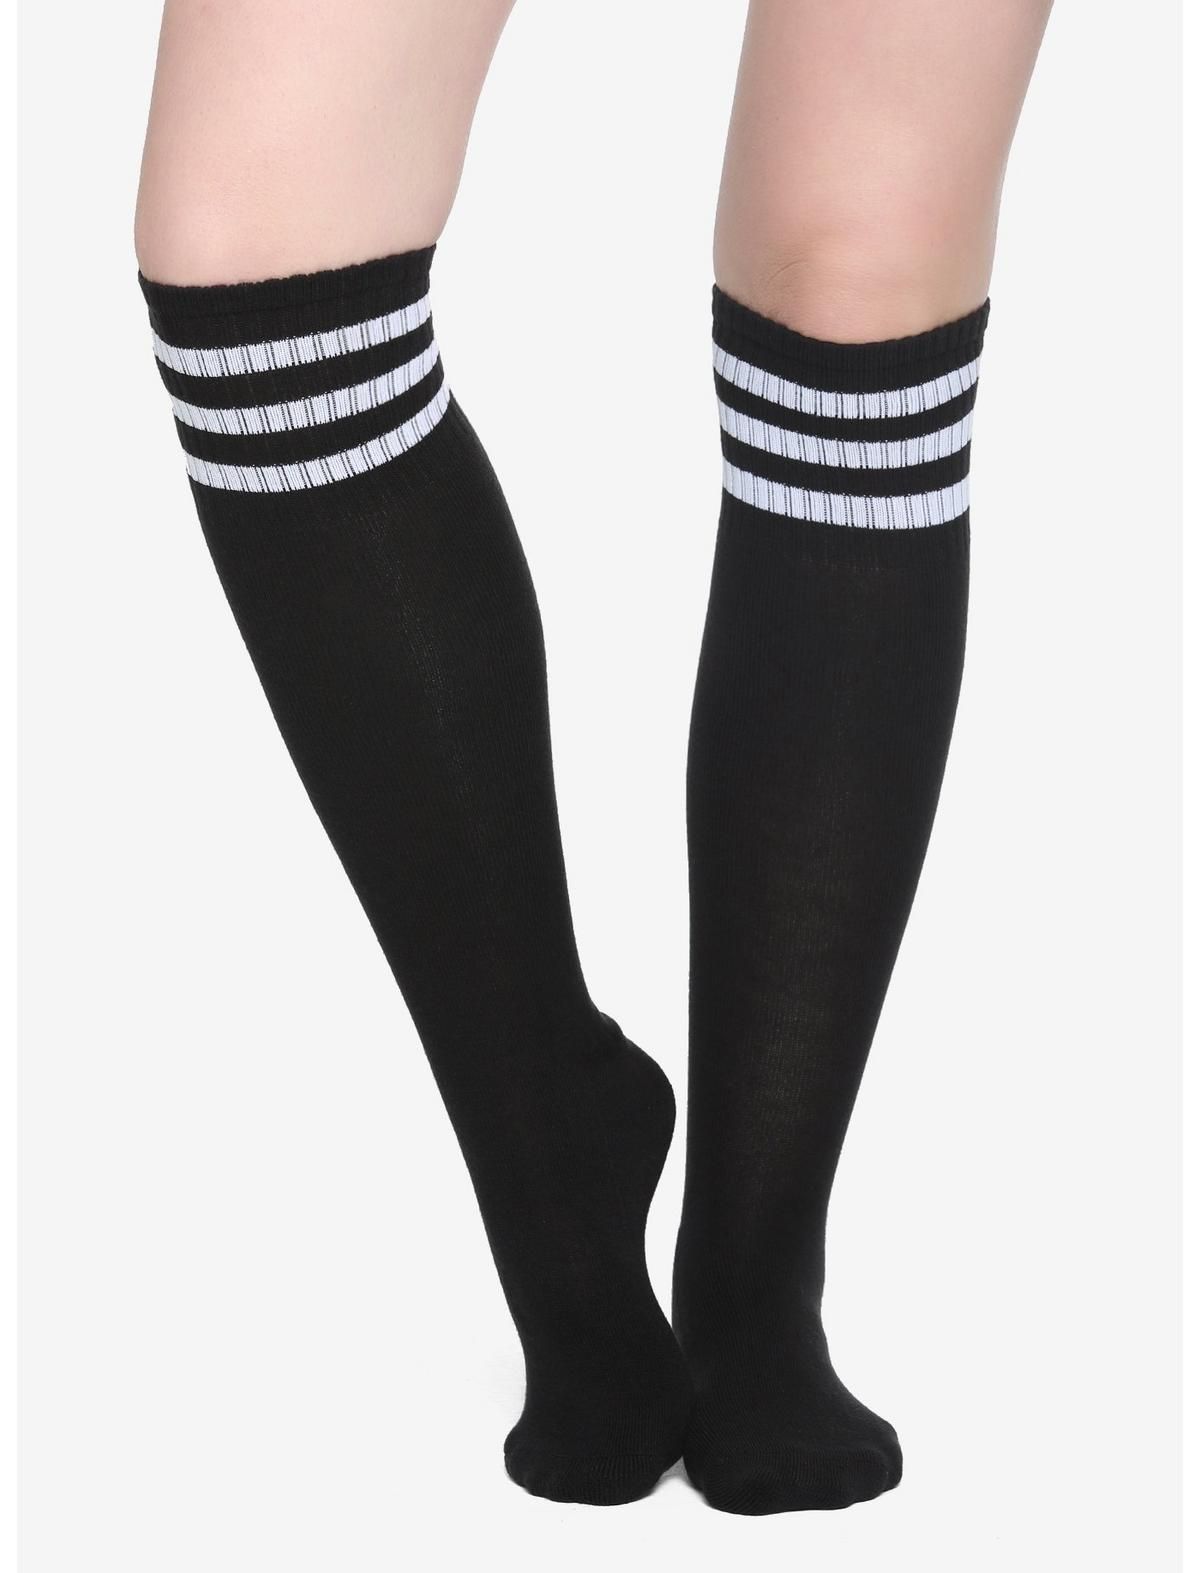 Black & White Cushioned Knee-High Socks | Hot Topic | Hot Topic